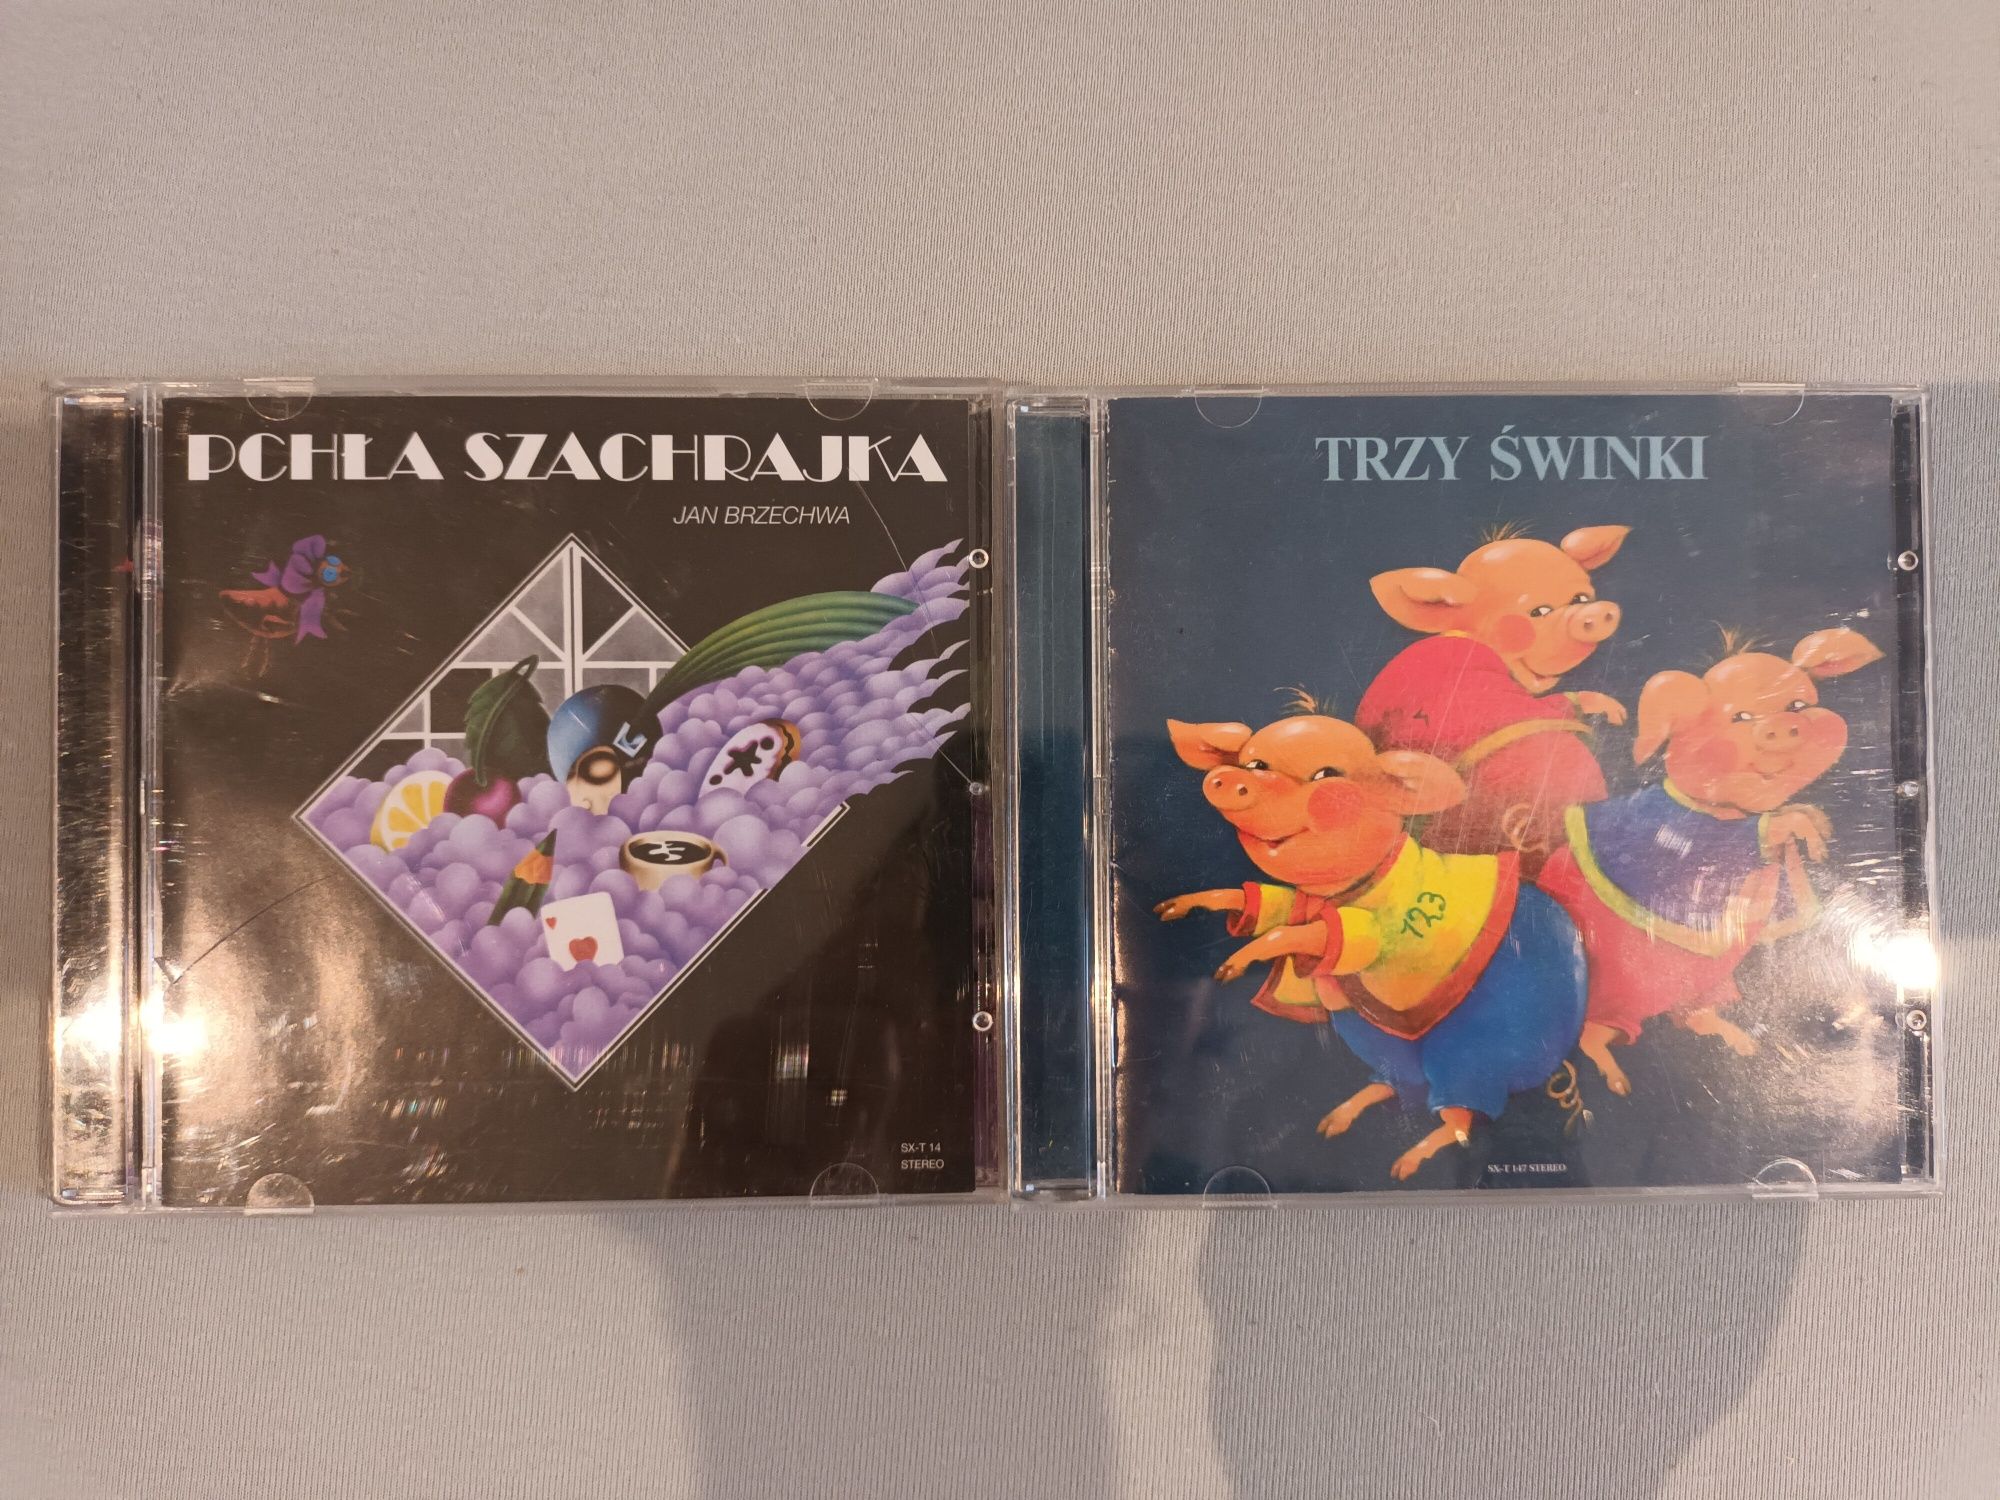 Bajki dla dzieci na CD "Pchła Szachrajka" i "Trzy świnki"